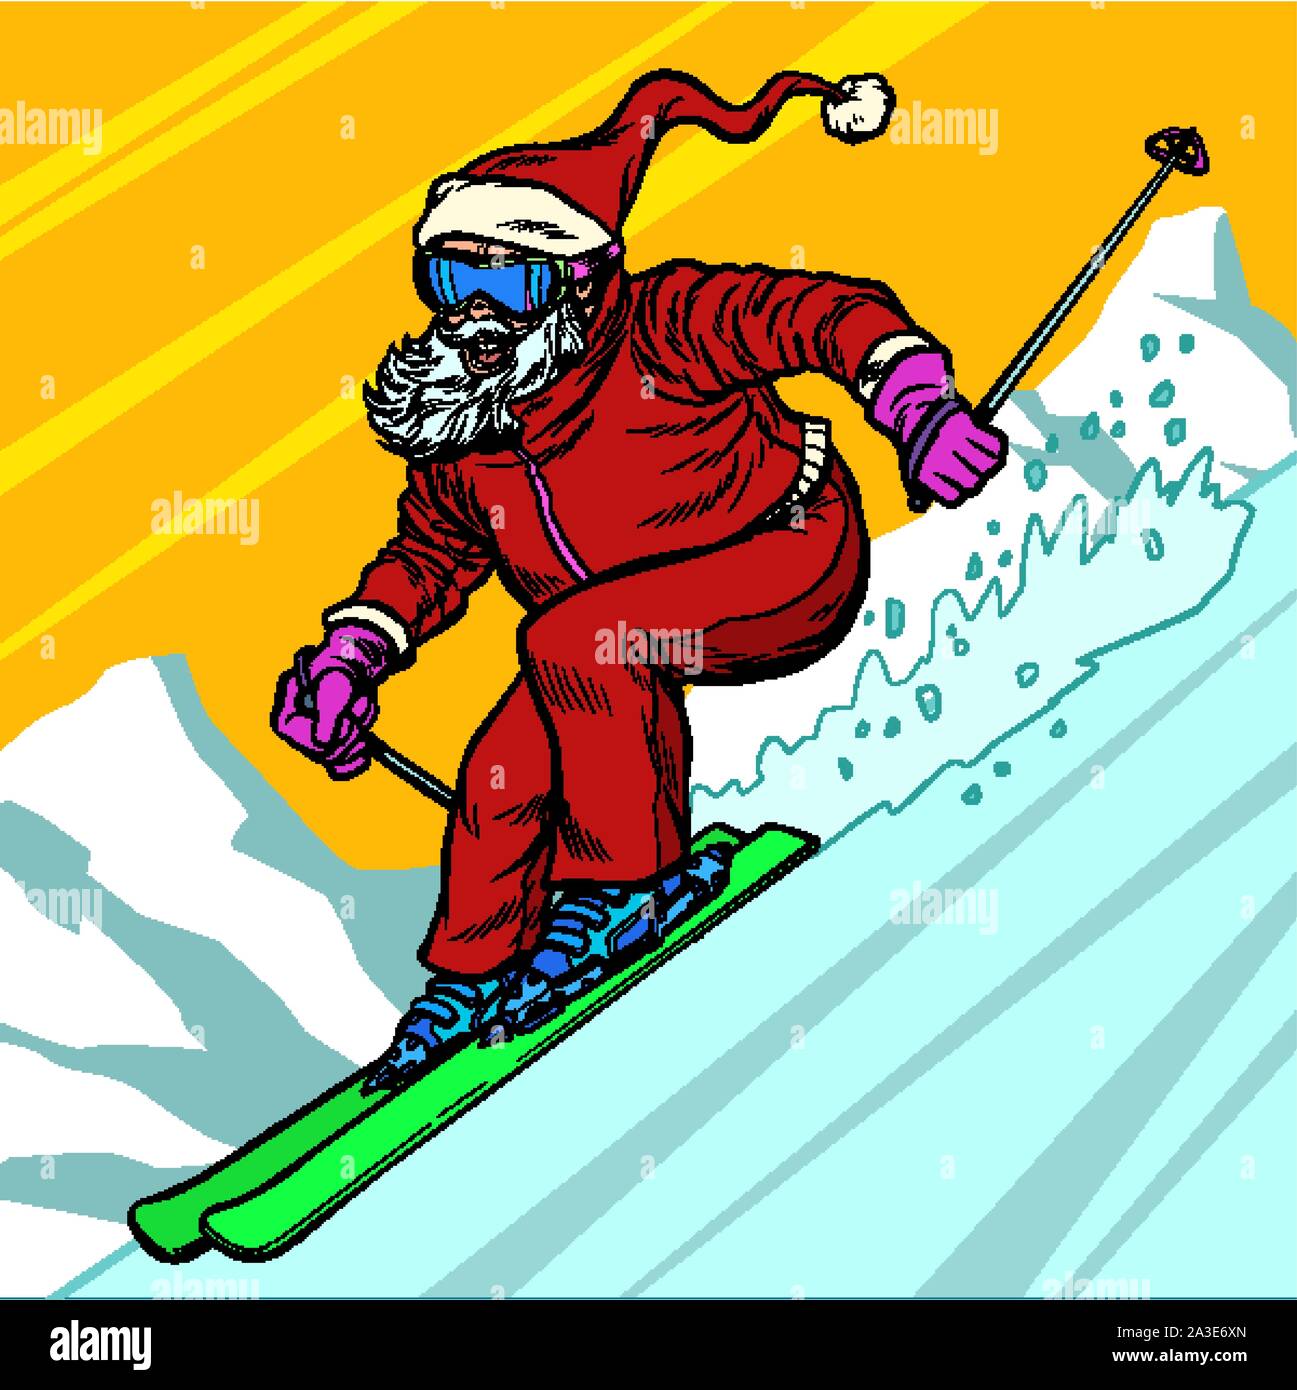 Journée de ski de la montagne de caractère du Père Noël Joyeux Noël et bonne année. Pop art retro vintage illustration vectorielle 5 dessin kitsch Illustration de Vecteur